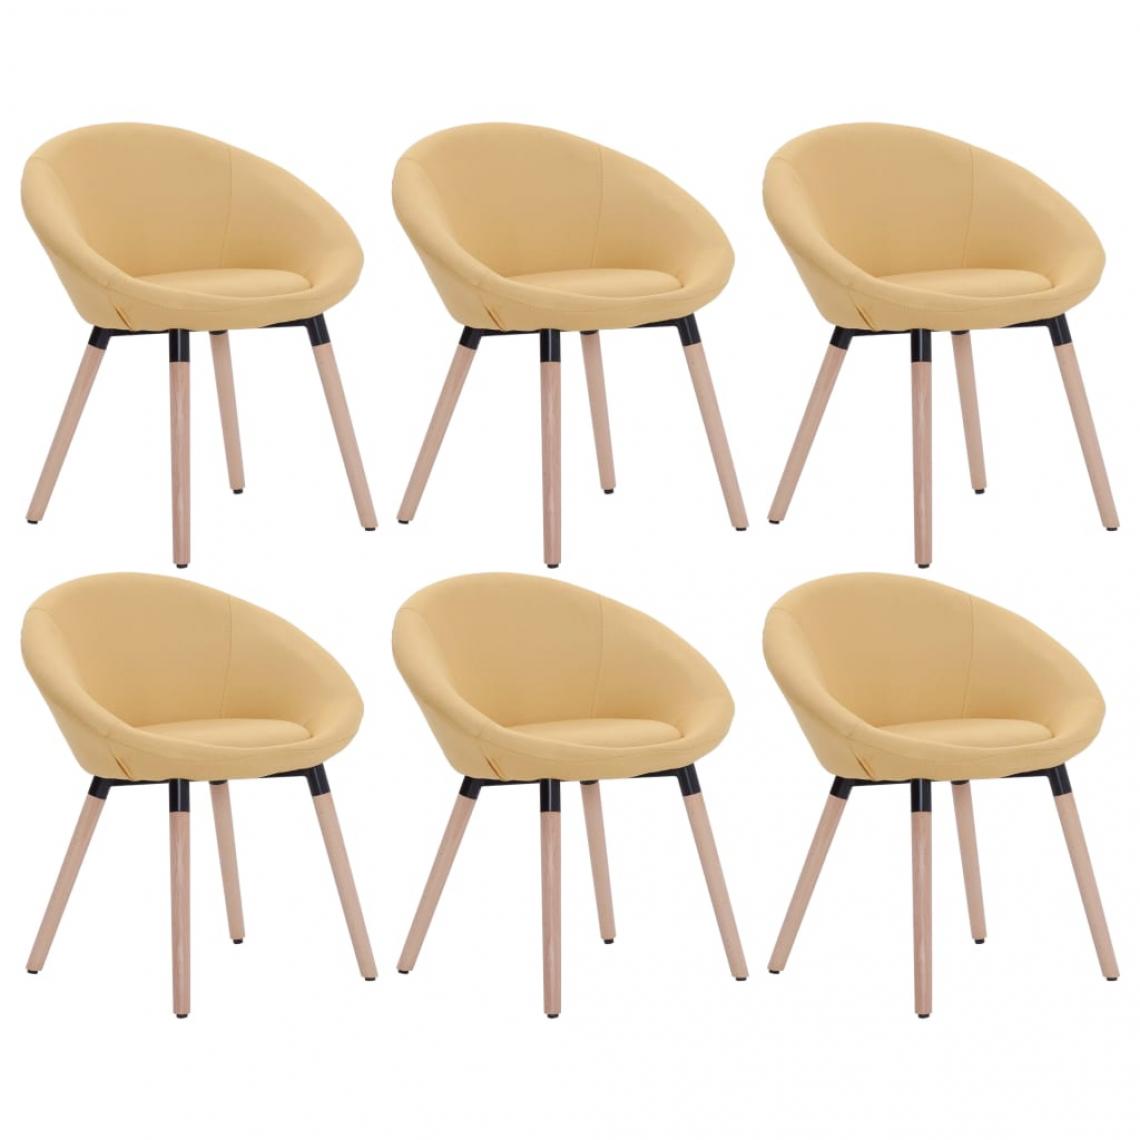 Decoshop26 - Lot de 6 chaises de salle à manger cuisine design contemporain tissu jaune CDS022528 - Chaises